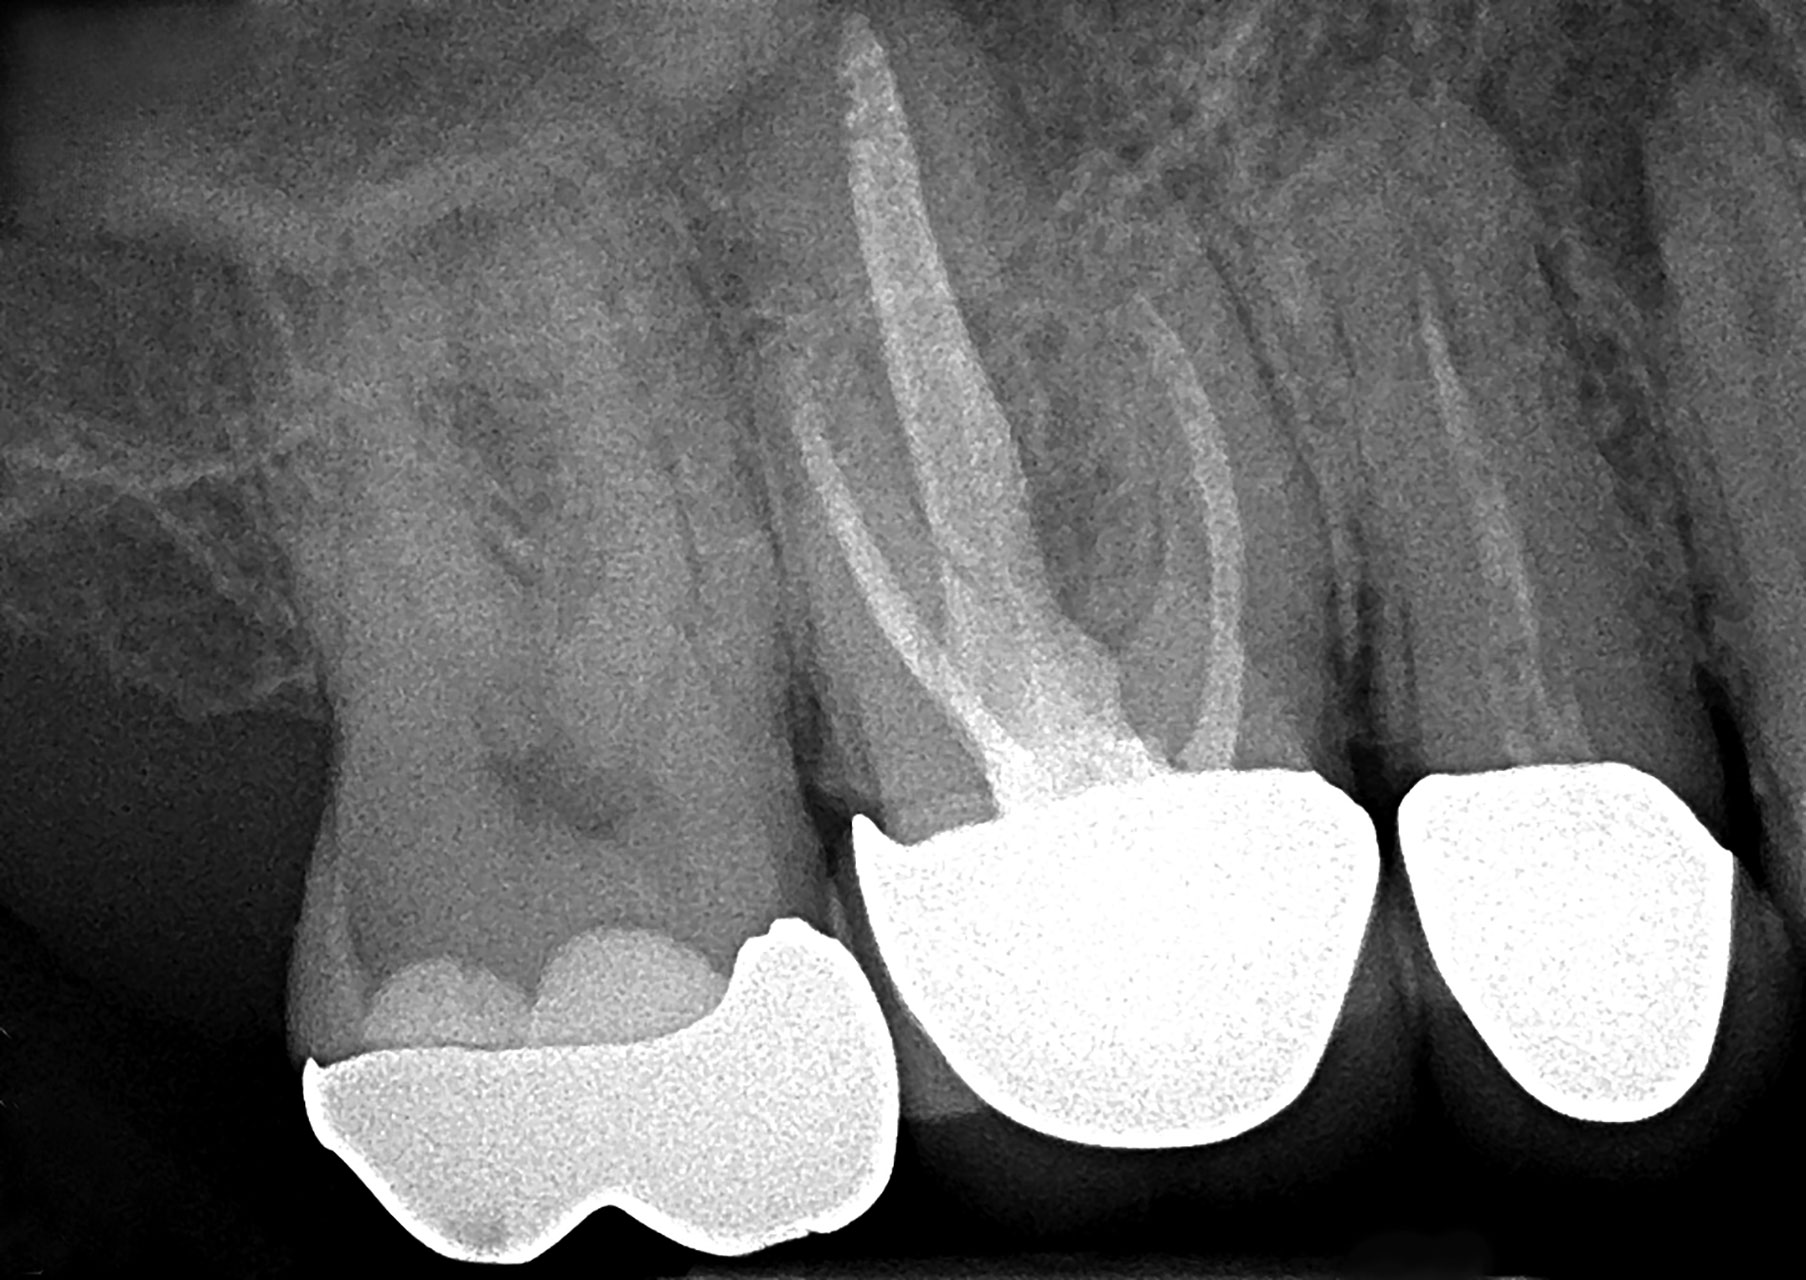 Abb. 1 Die Ausgangsaufnahme zeigt die insuffizienten prothetischen Restaurationen der Zähne 16 und 15 mit unterfüllten Wurzelkanälen.